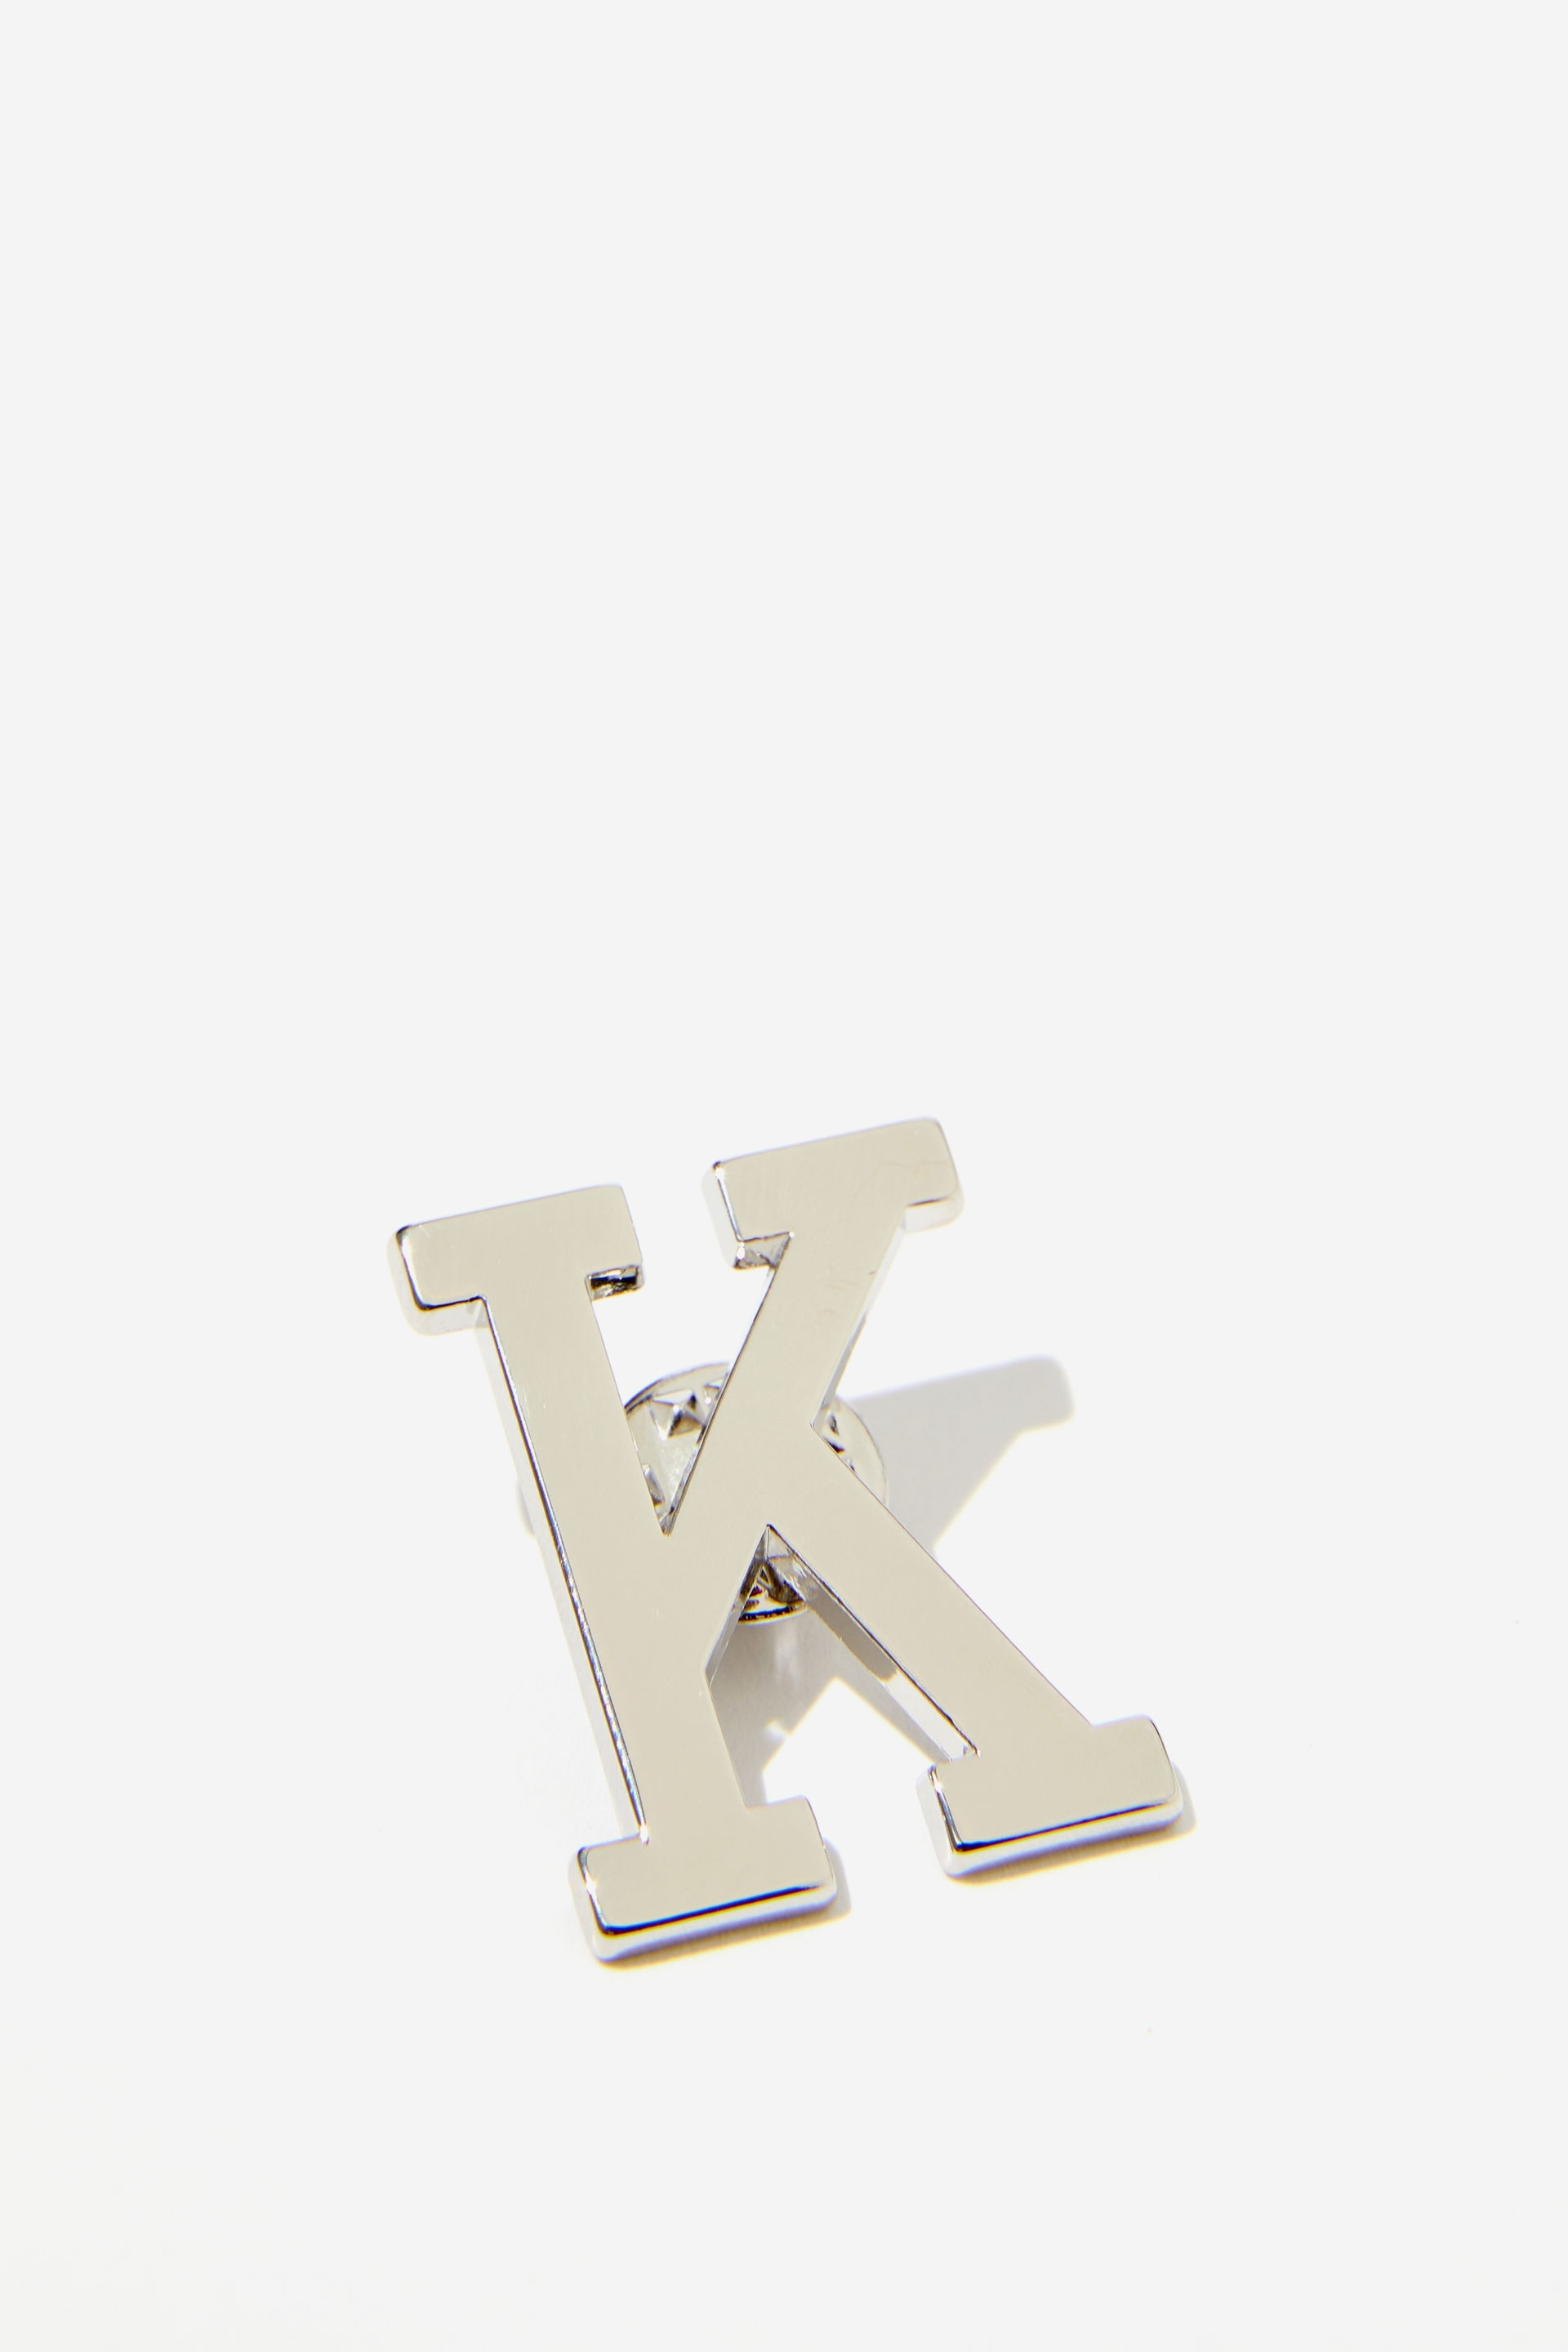 Typo - Alpha Pin - K silver